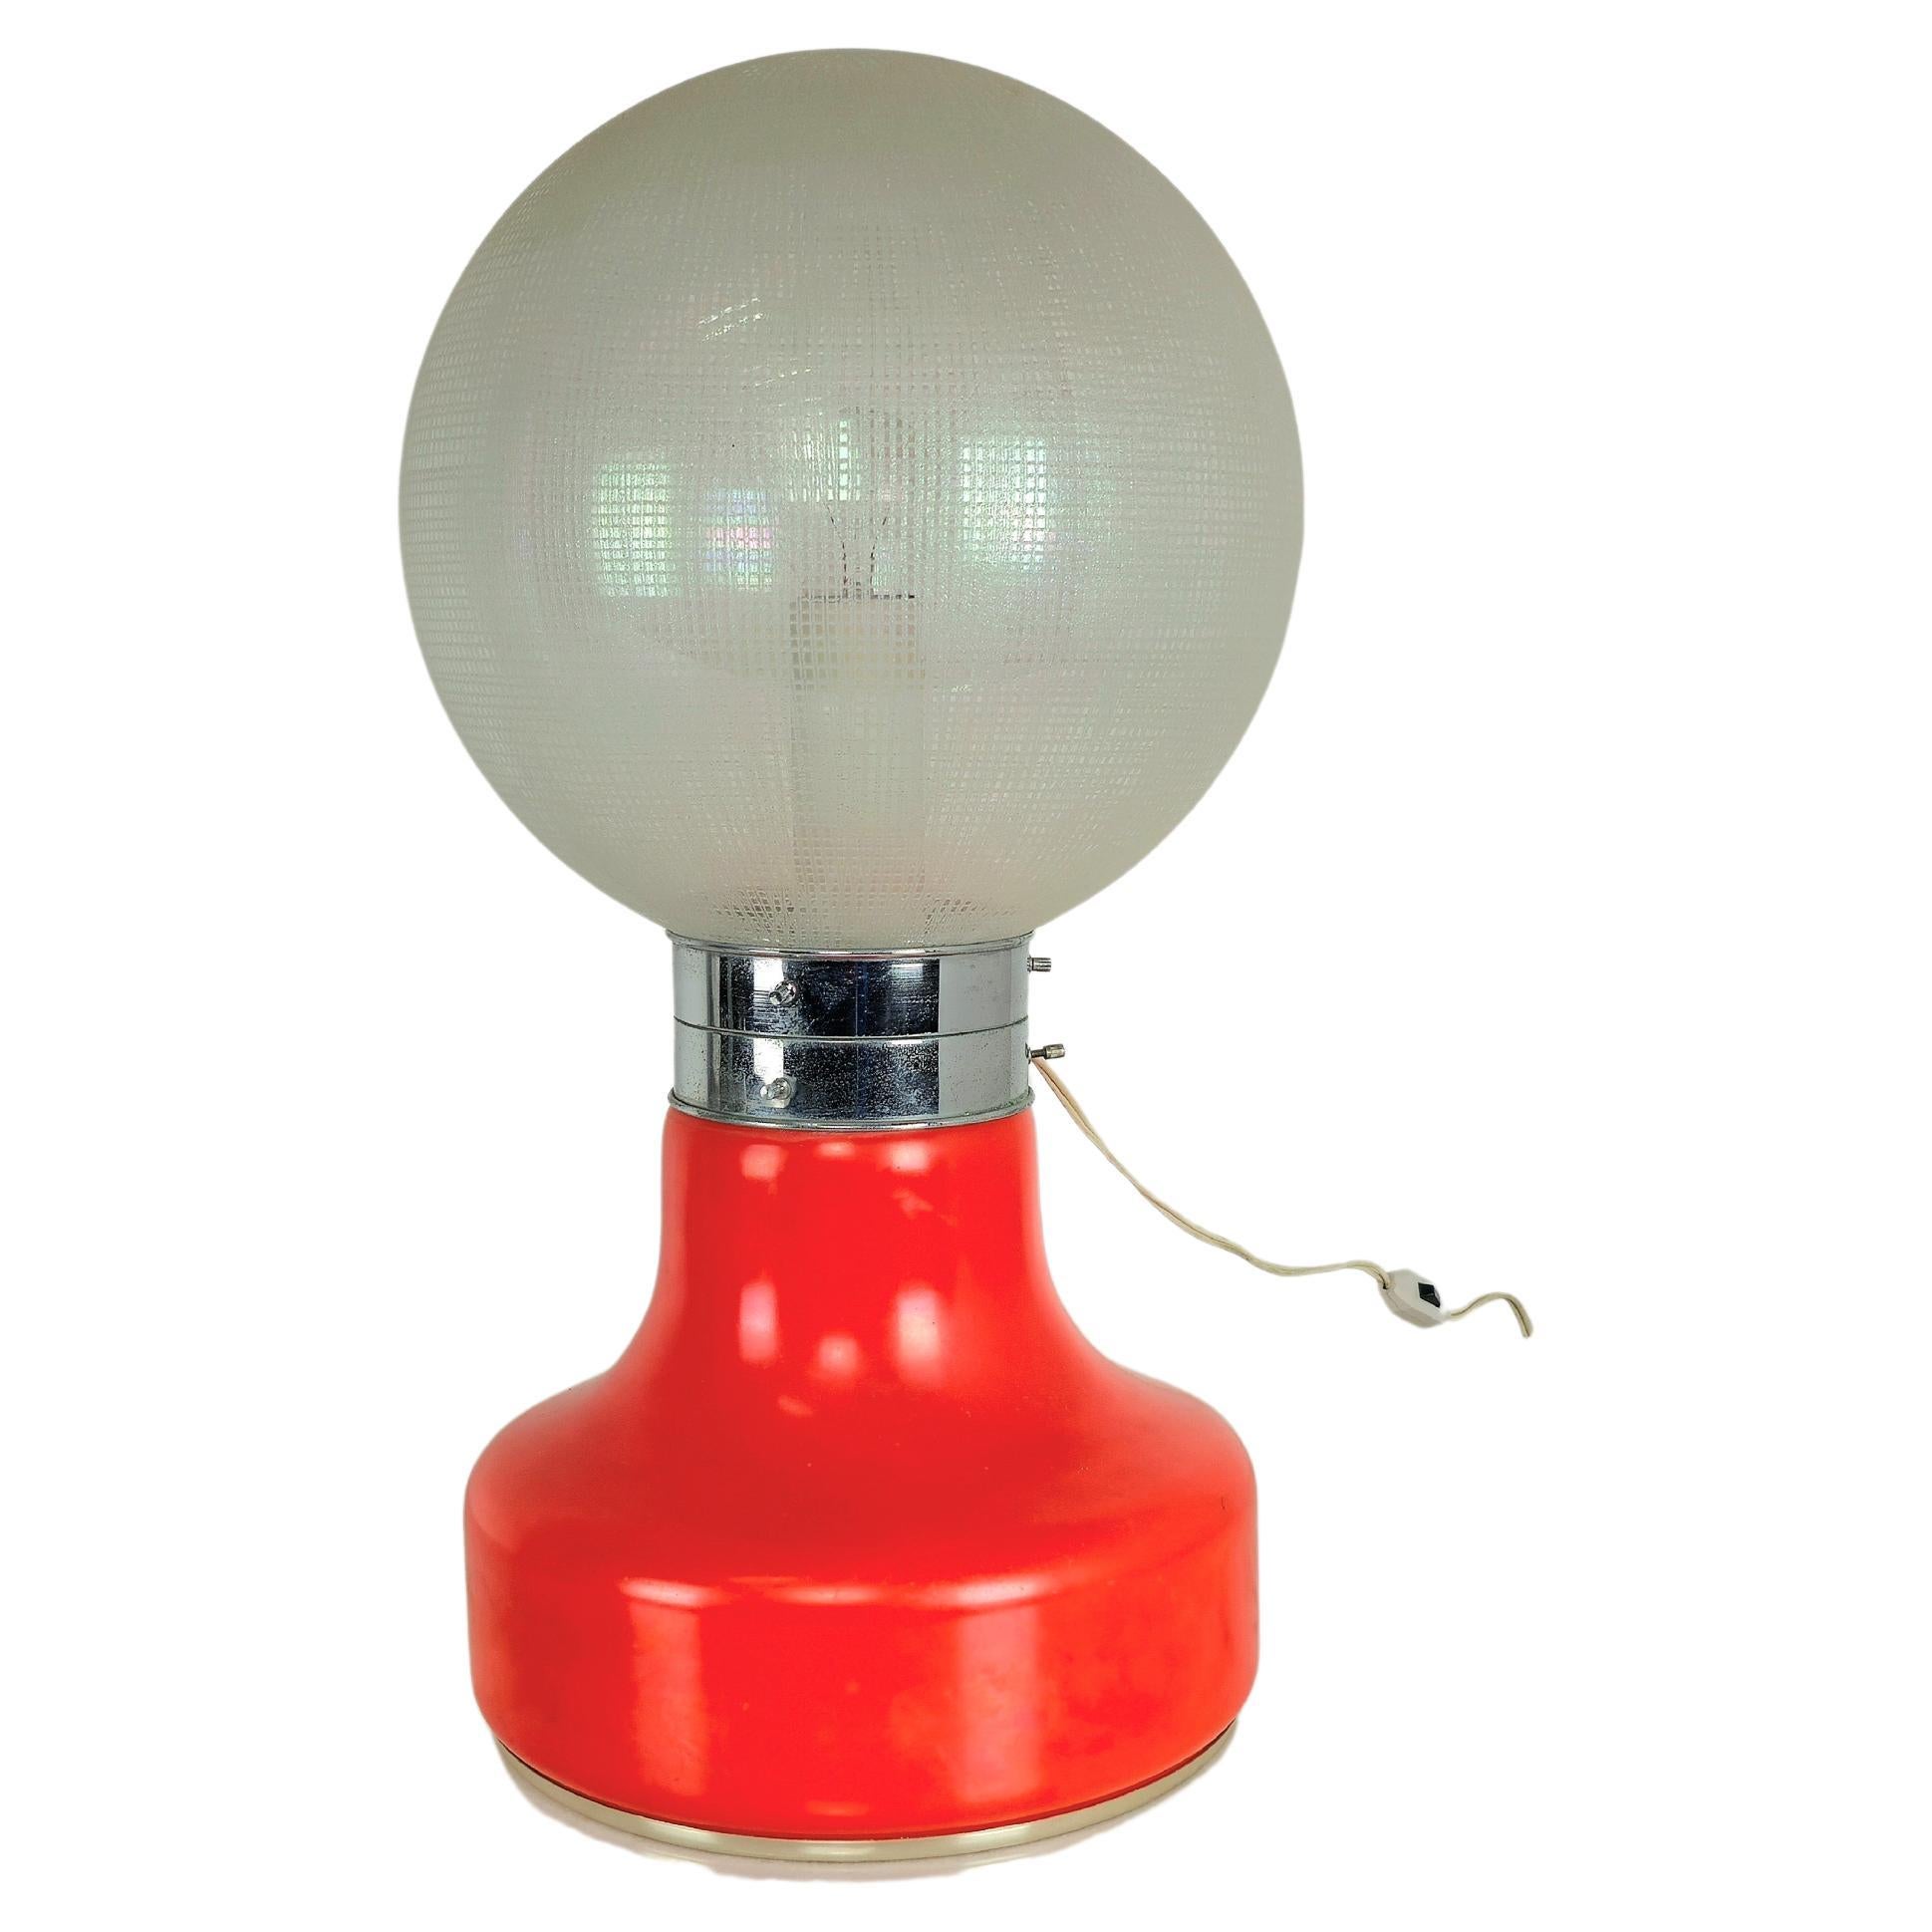 Lampe de table produite en Italie dans les années 60.
La lampe est composée d'un verre supérieur sphérique avec des carrés particuliers en relief sur toute sa surface et d'un verre inférieur dans des tons entre le rouge et l'orange. Les deux verres